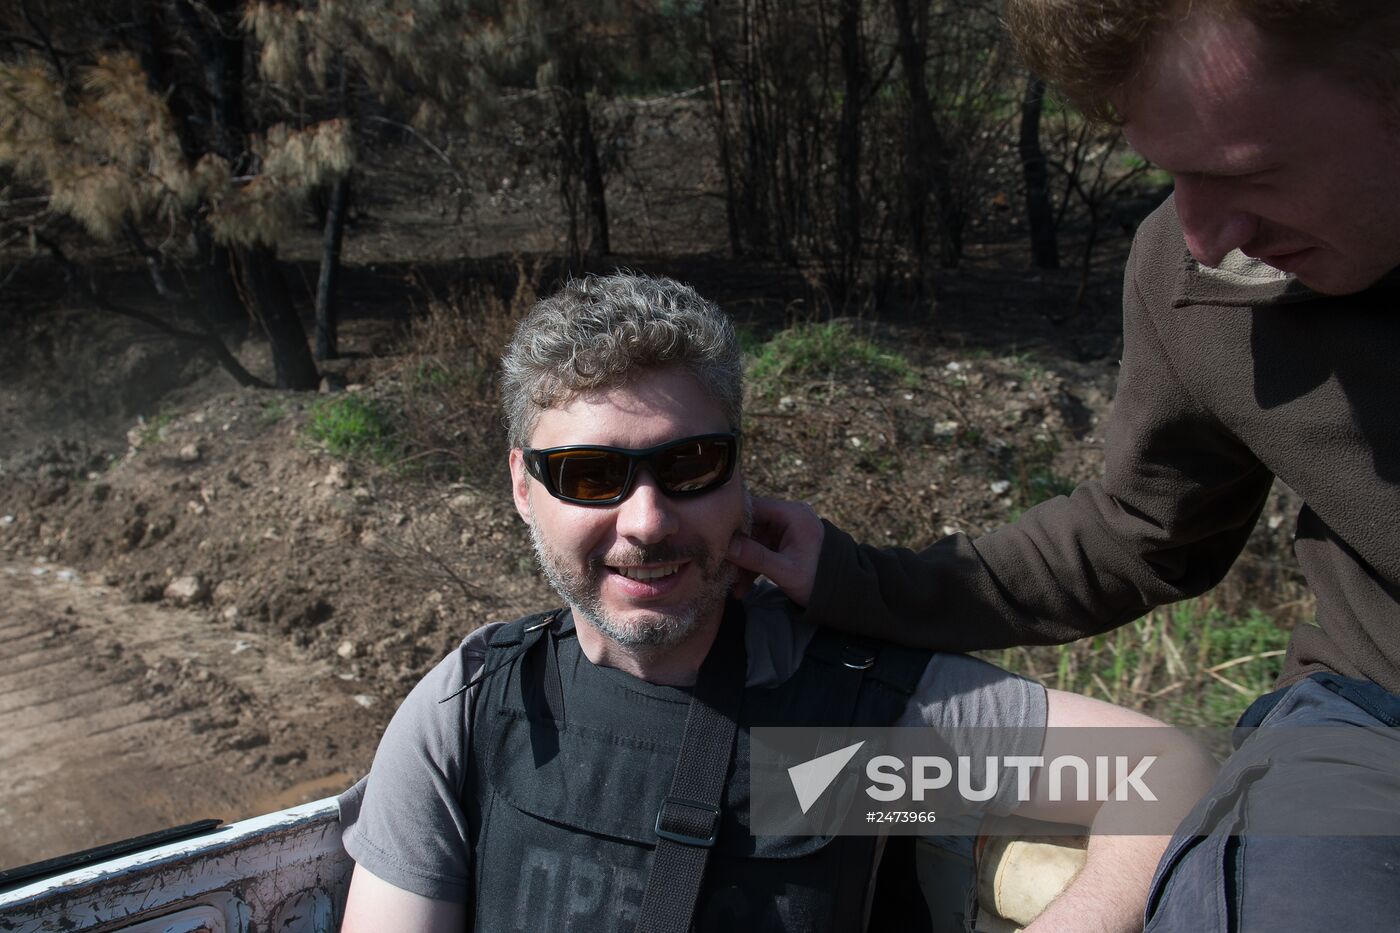 Rossiya Segodnya special photojournalist Andrei Stenin